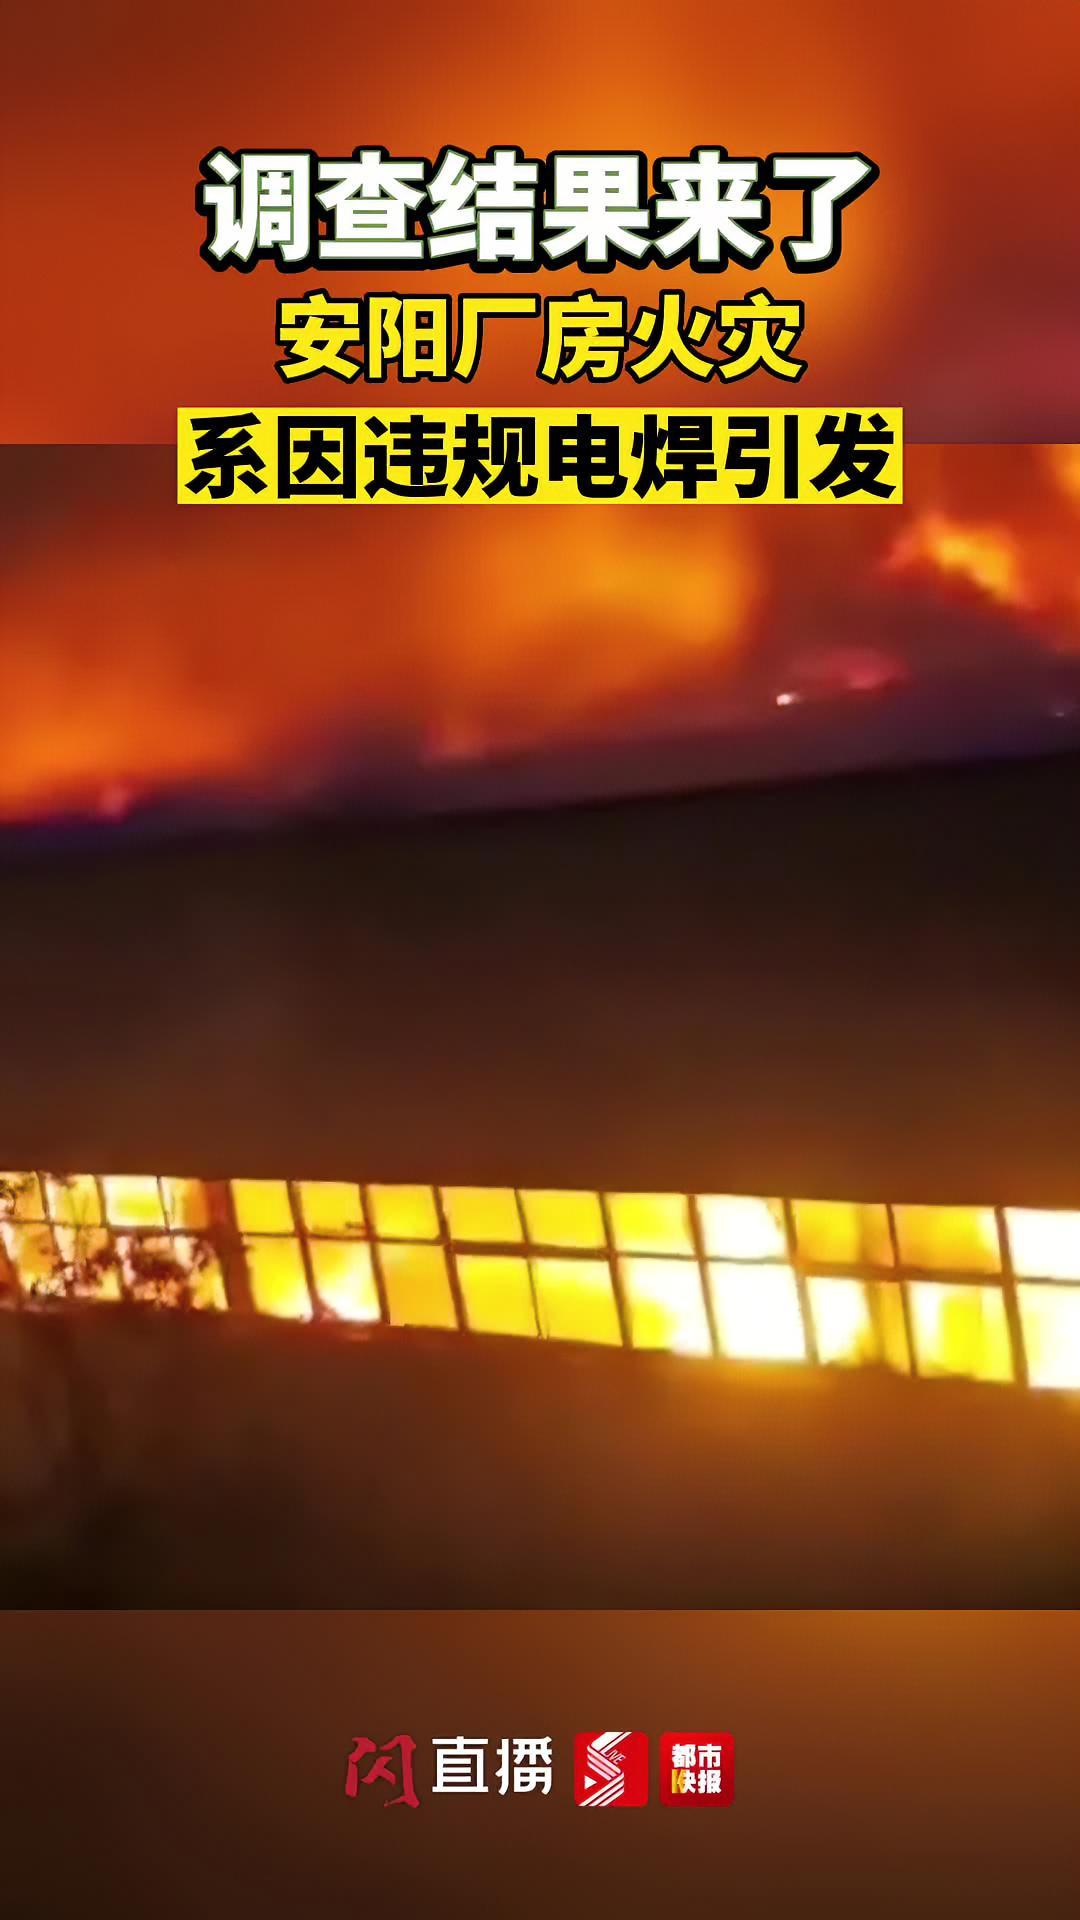 河南安阳火灾事故致38人遇难 搜救工作基本结束 | 格局新闻网 | 华语世界价值新闻平台 | 新西兰新闻